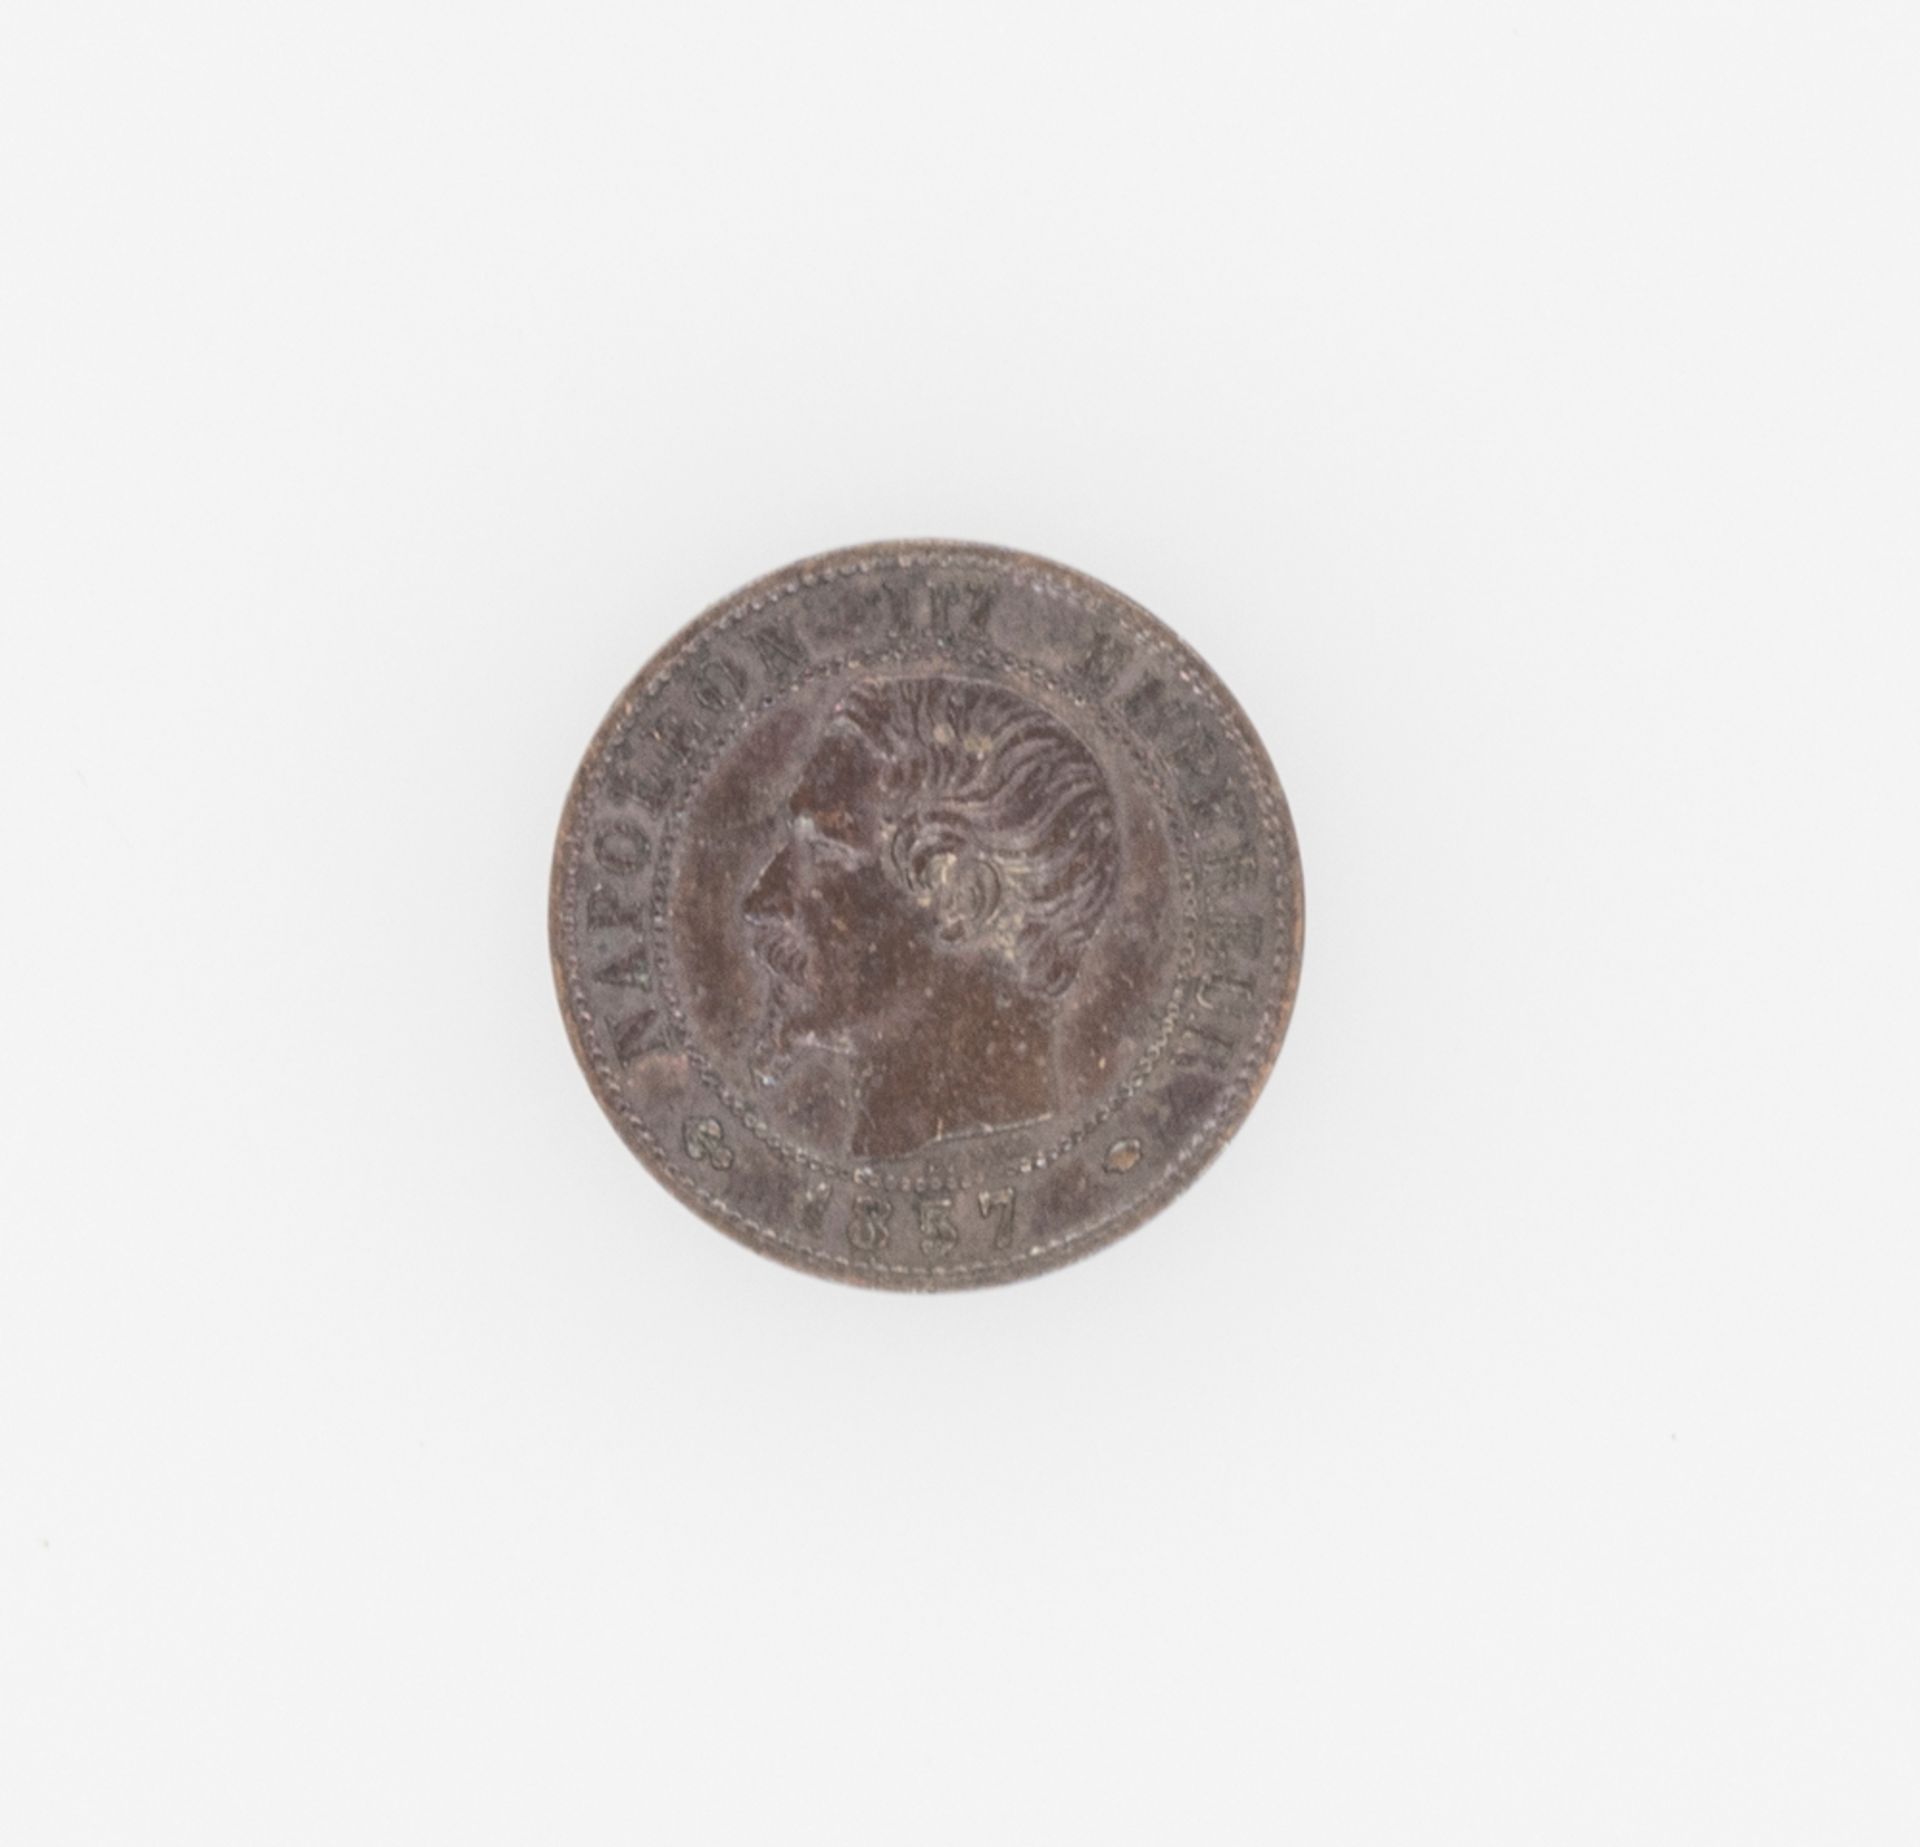 Frankreich 1857, 1 Centime - Münze "Napoleon III.". Münzstätte: Straßburg. Erhaltung: ss.